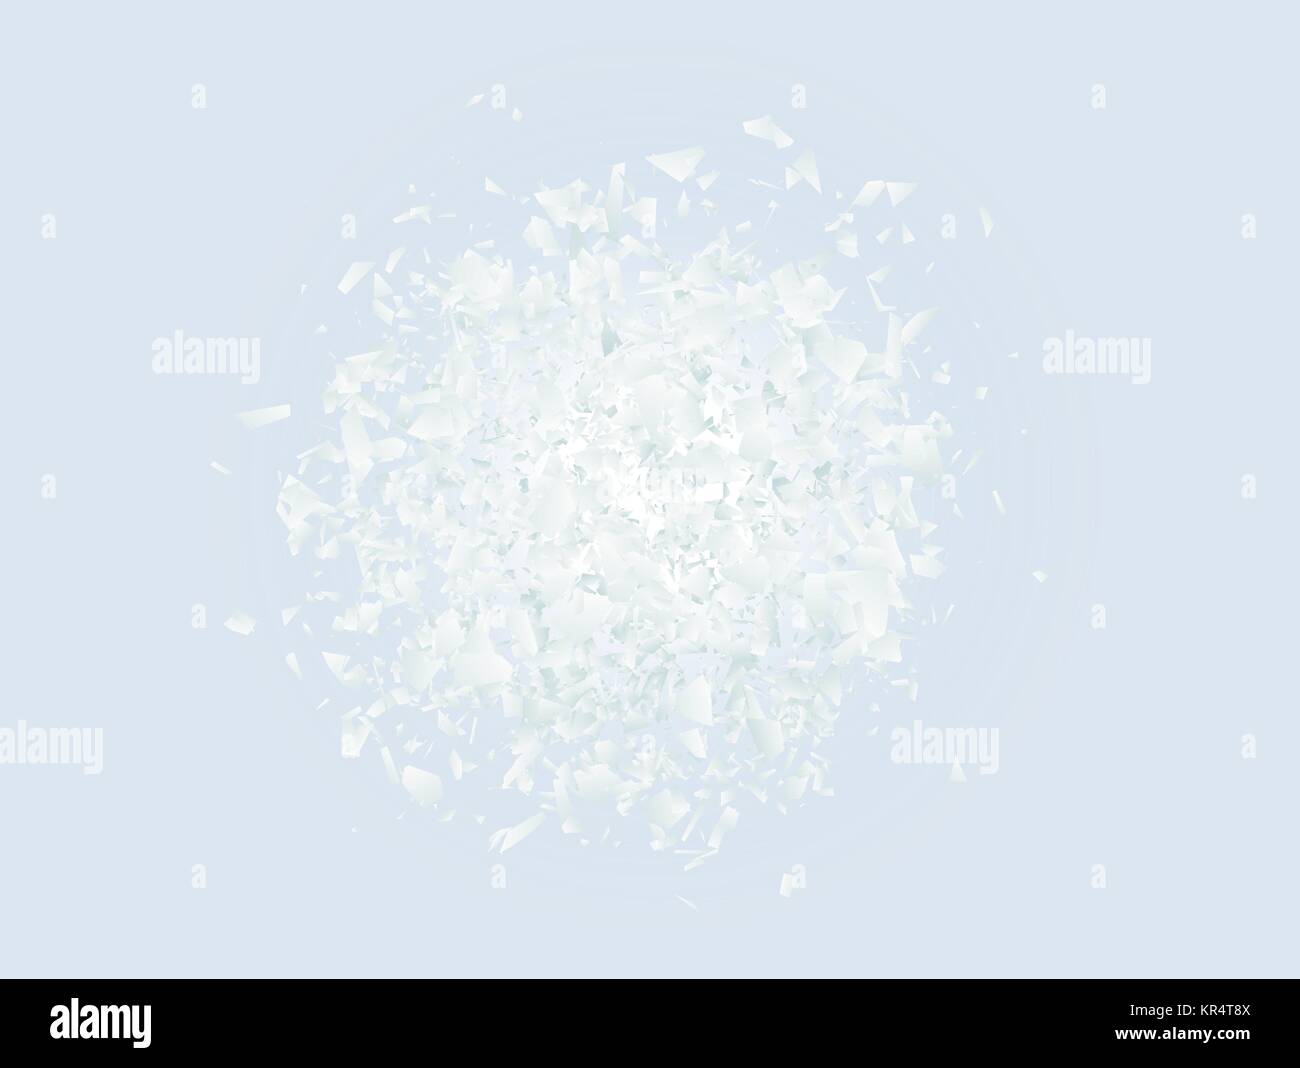 Abstrakte explosion Wolke von weißen Stücke auf hellblauem Hintergrund. Explosive Zerstörung. Partikel zerbrochenes Glas. Vector Illustration Stock Vektor